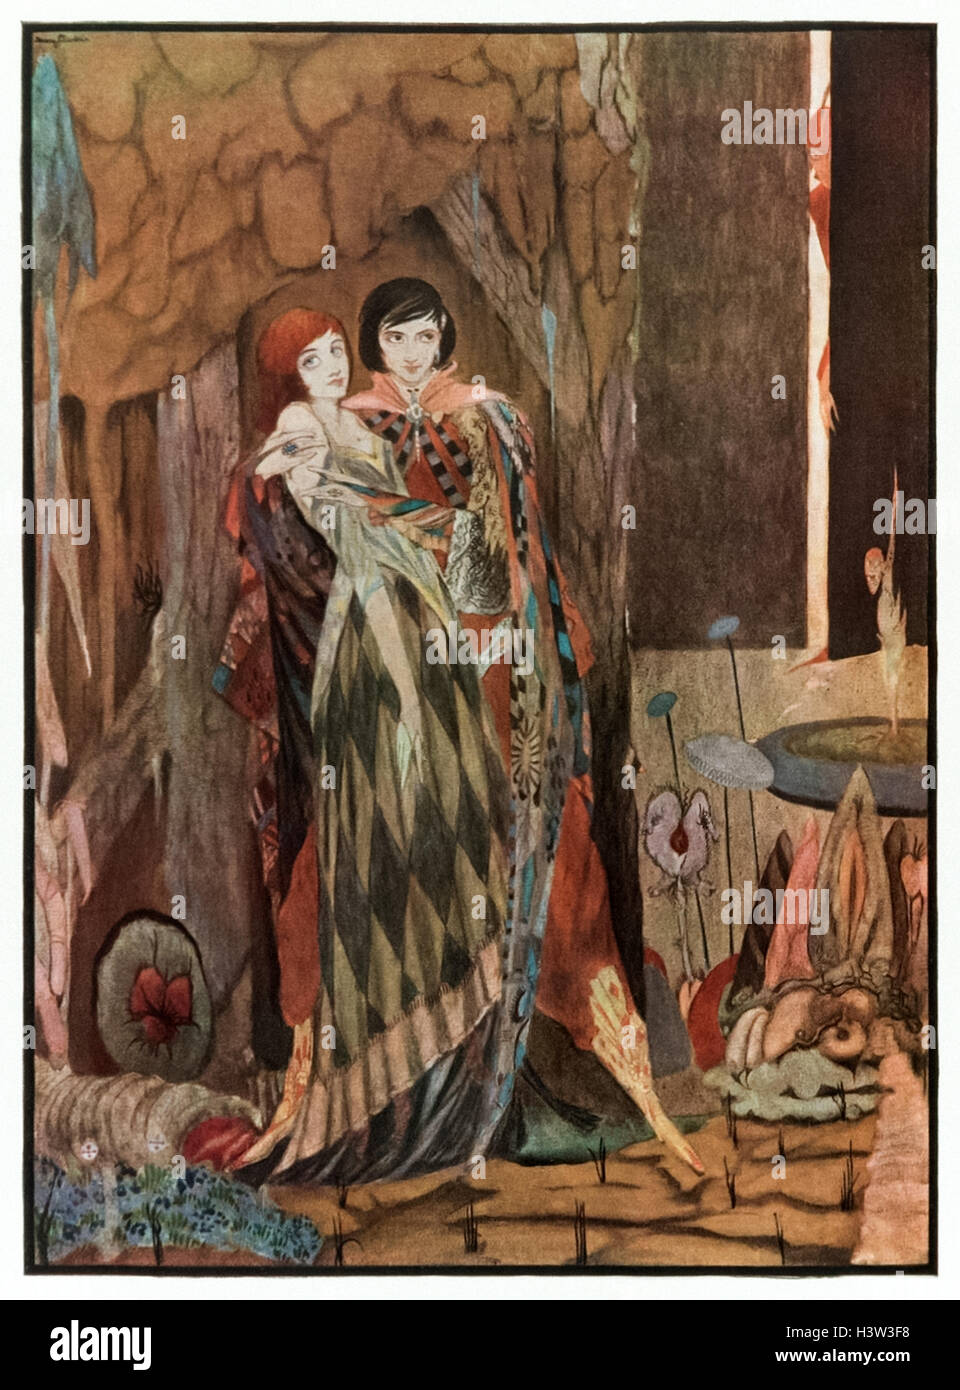 "Querida y mejor, con todo mi corazón te amo." frontispicio ilustración de "Fausto" de Goethe por Harry Clarke (1889-1931). Mefistófeles ayuda a Faust seducir la bella Gretchen. Foto de stock